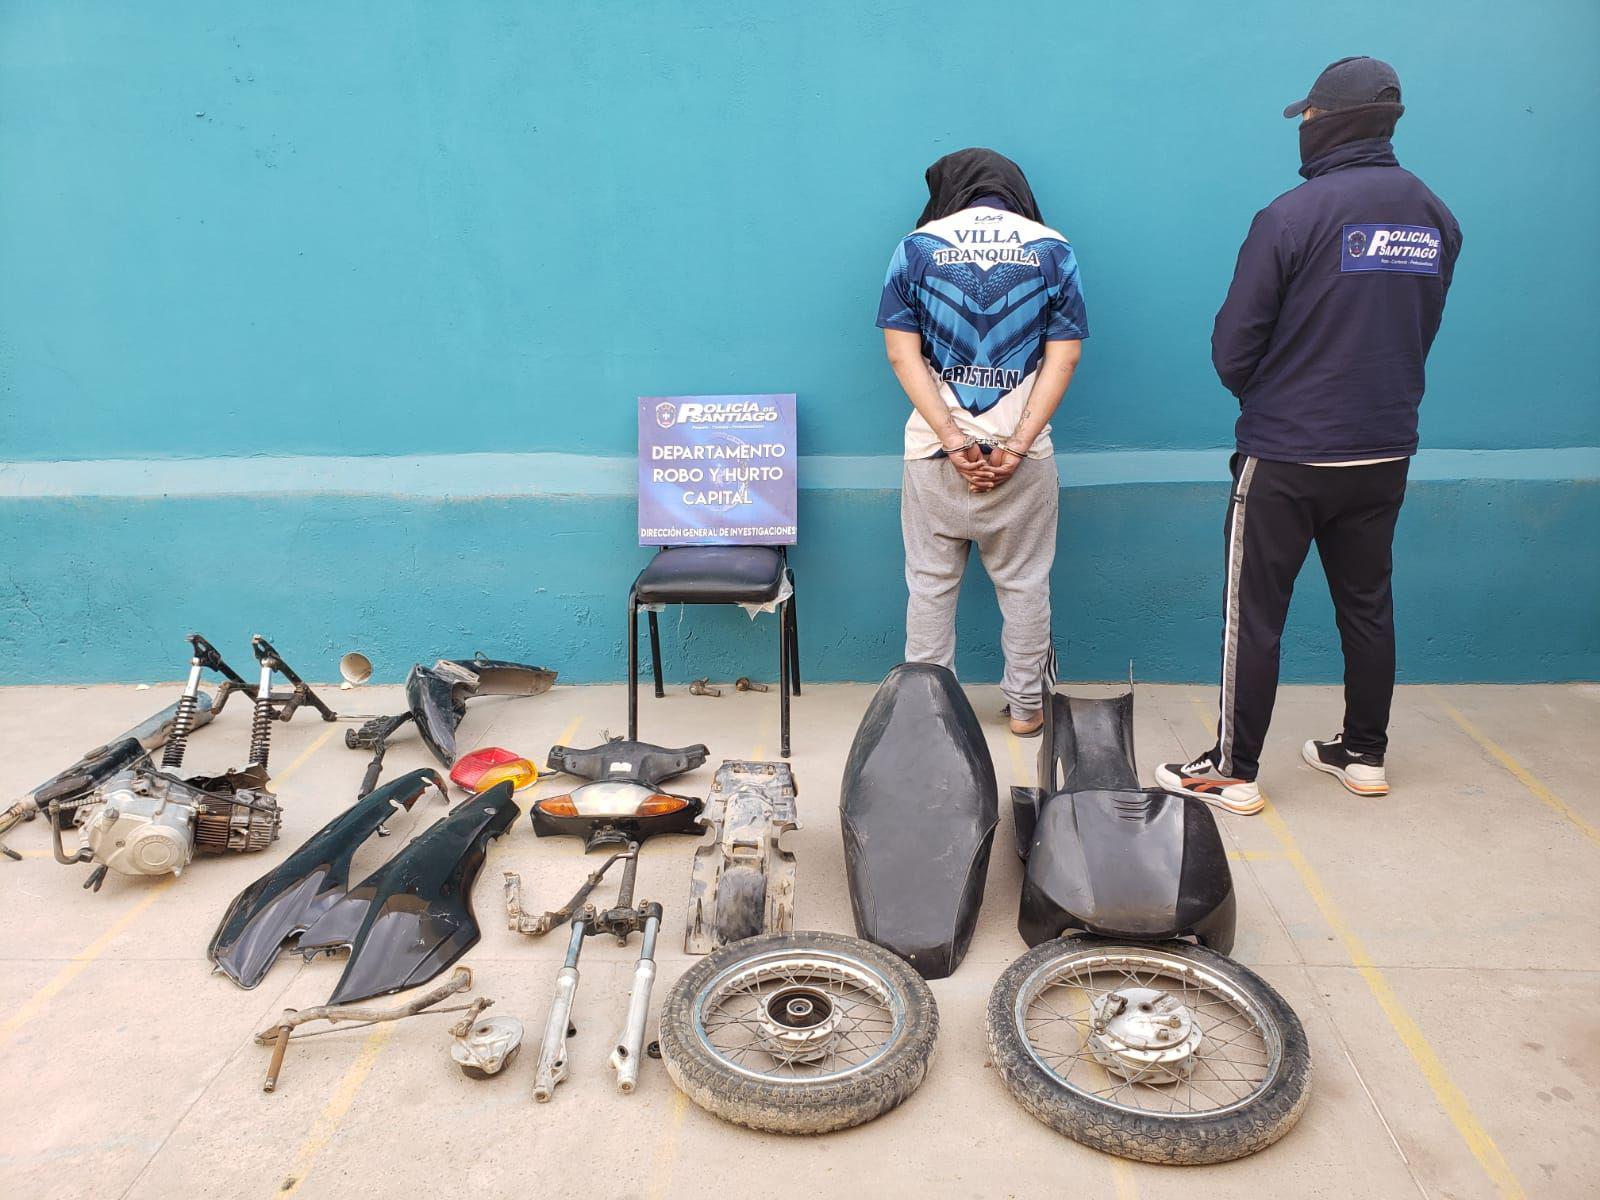 Ingresaron a un taller y se robaron una moto- la policiacutea la recuperoacute desarmada